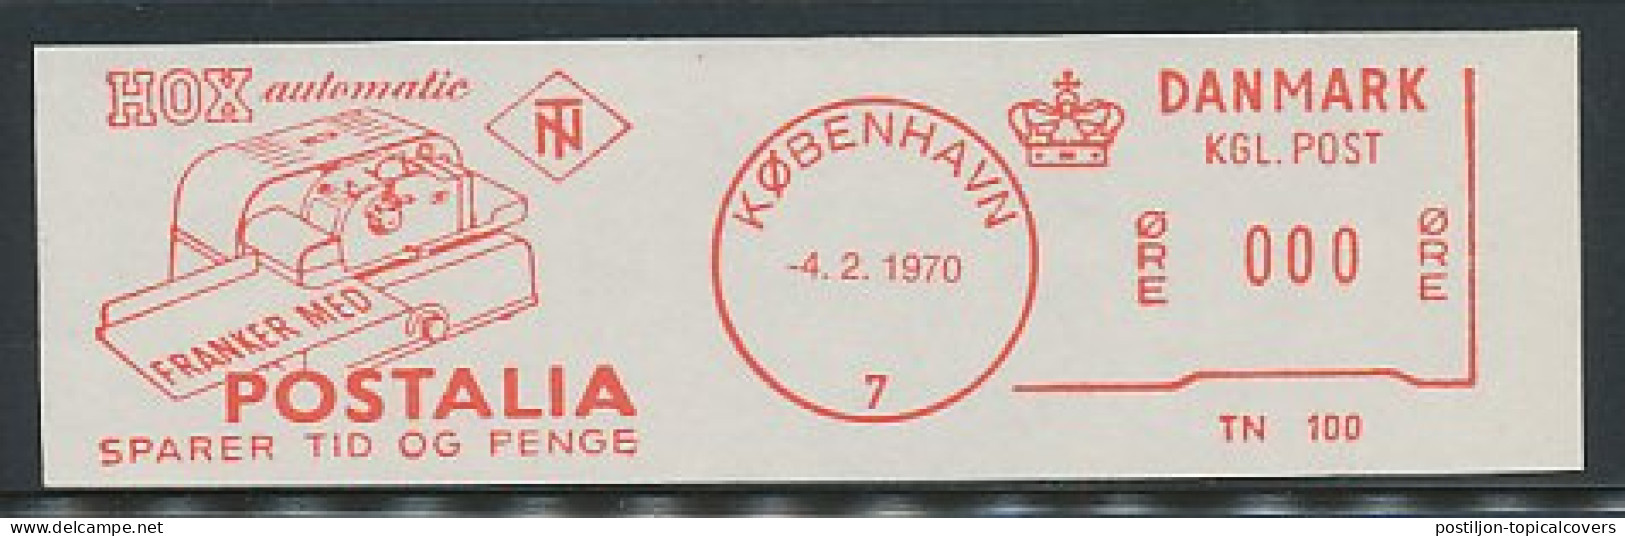 Test Meter Strip Denmark 1970 Postalia  - Vignette [ATM]